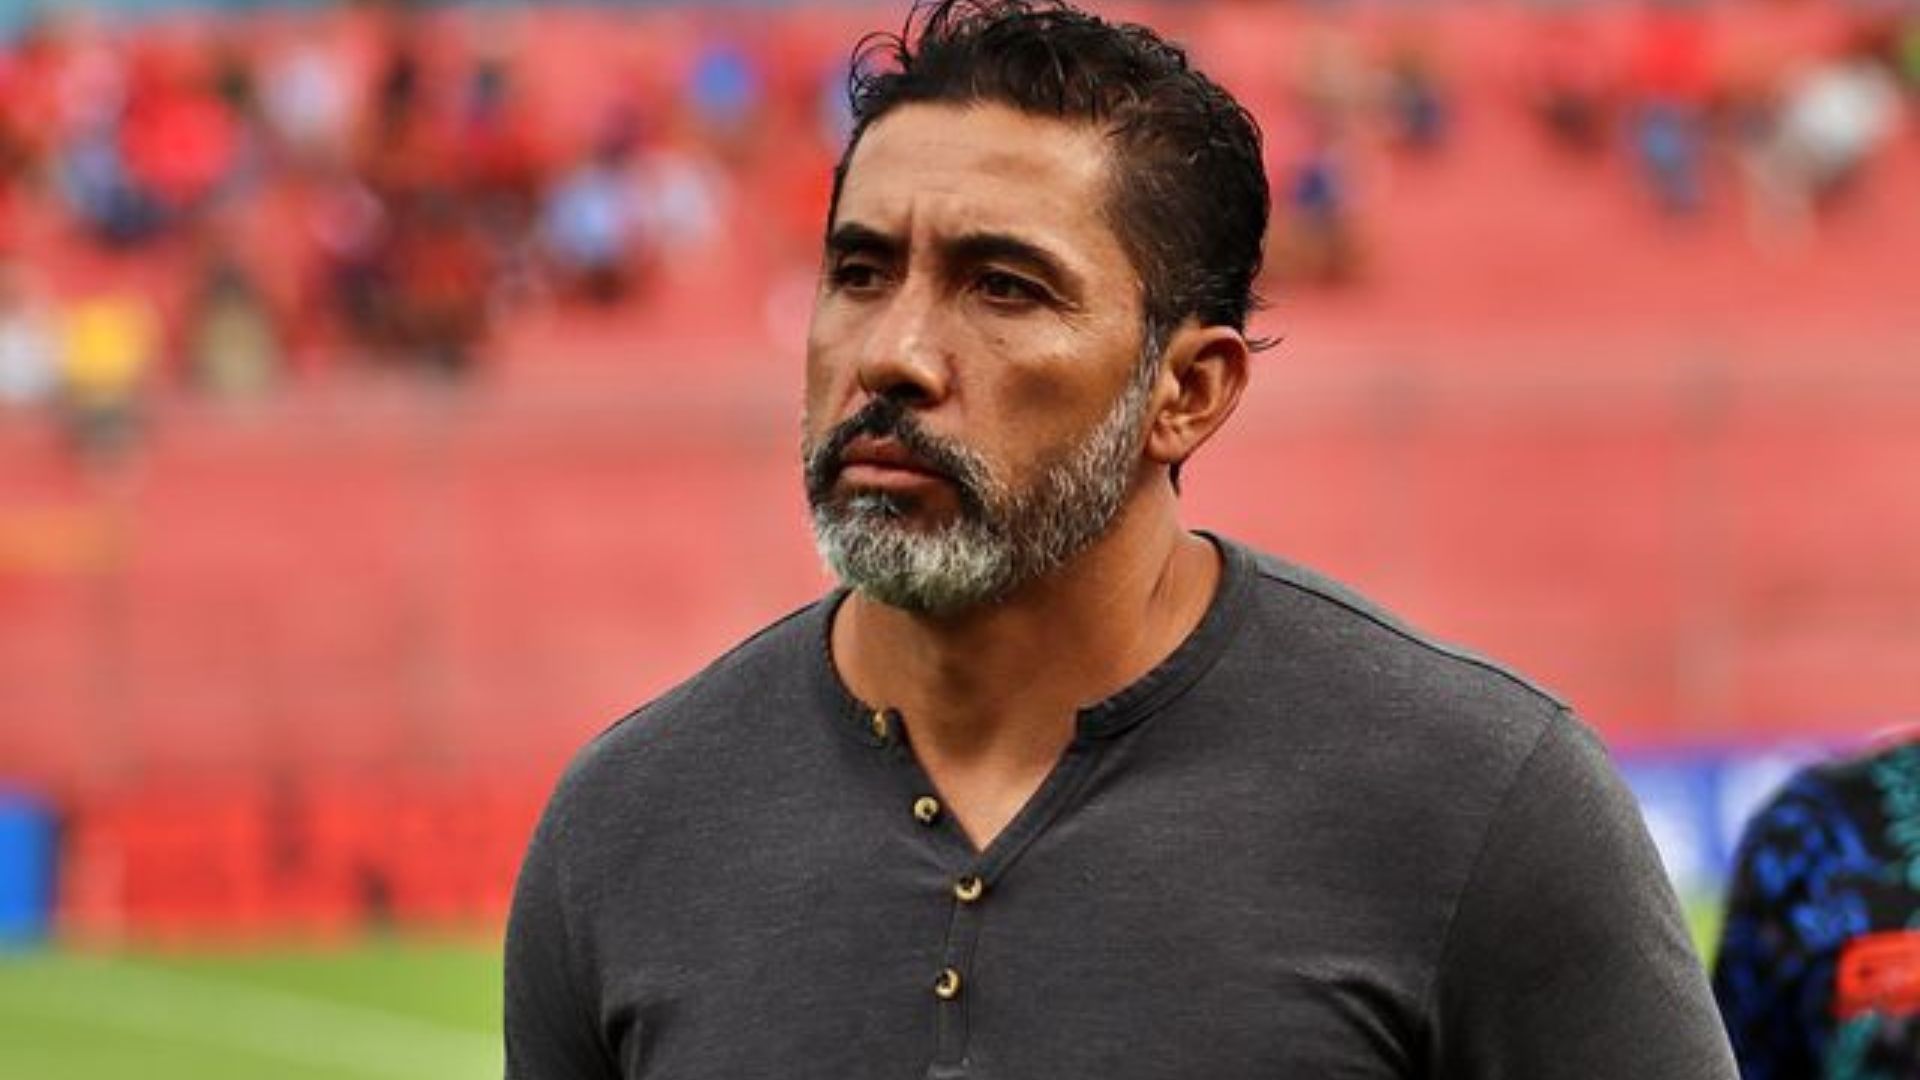 El nuevo técnico de Cobán Imperial, Adrián Arias, fue anunciado ayer en las redes sociales del club y de la liga. (Foto Prensa Libre: @LigaGuateB)